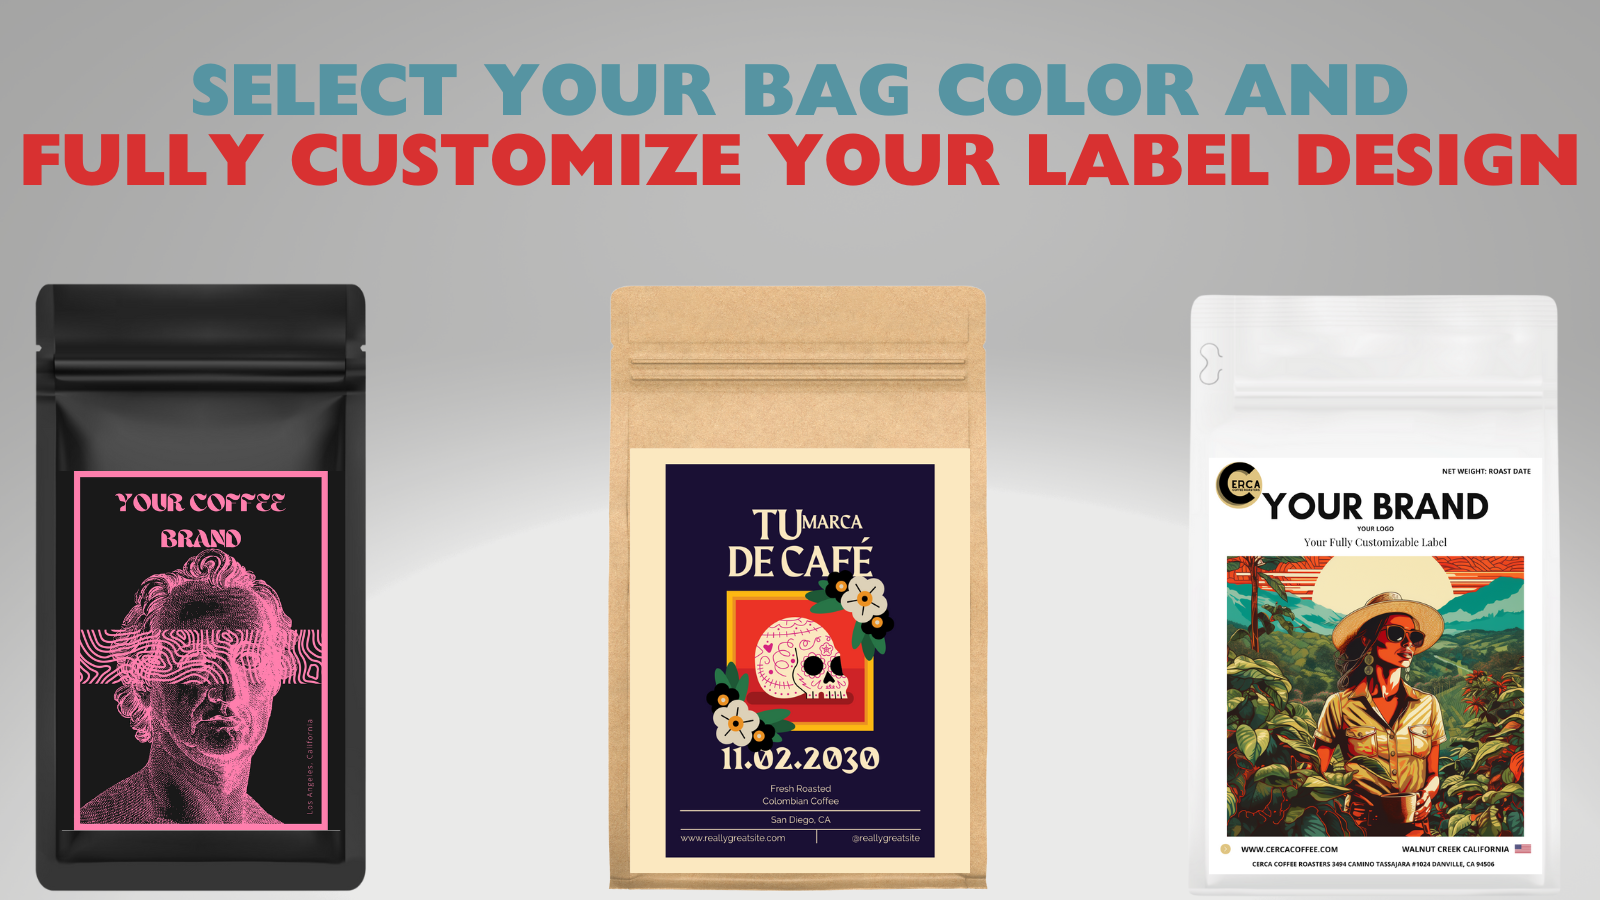 Selecciona el color de tu bolsa y personaliza completamente el diseño de tu etiqueta.